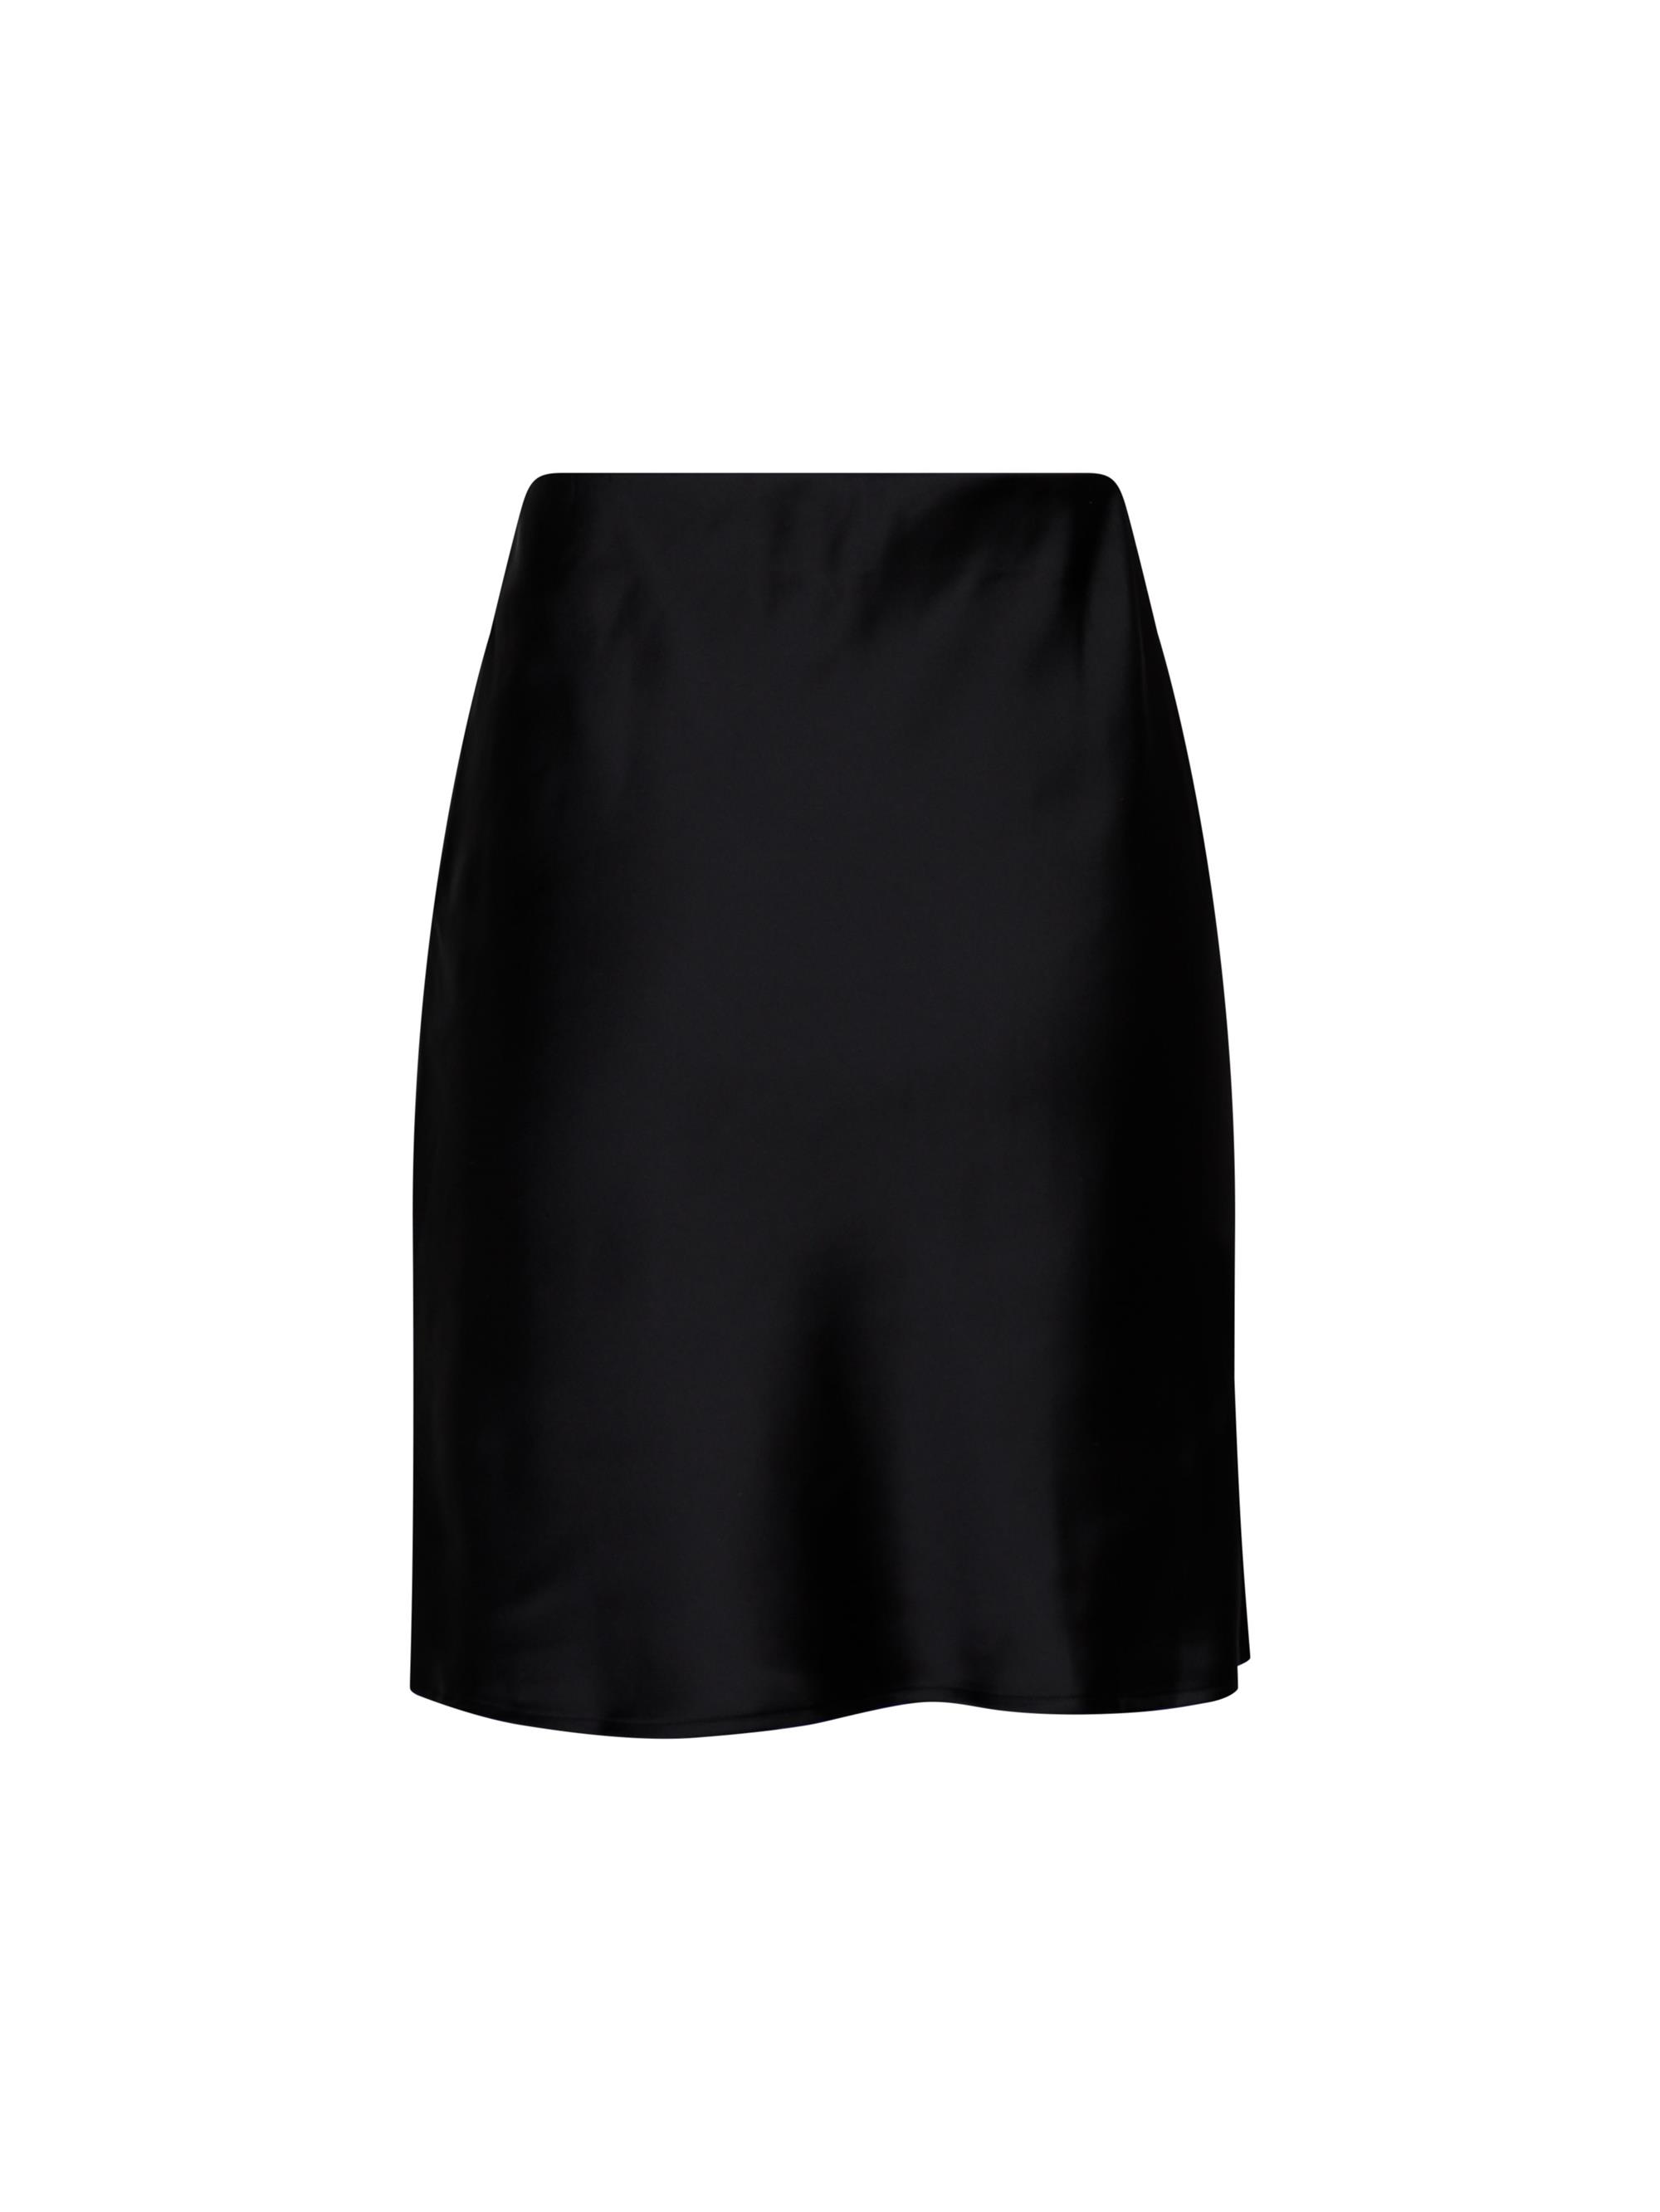 Stædig log Vidunderlig Neo Noir - Satina Skirt